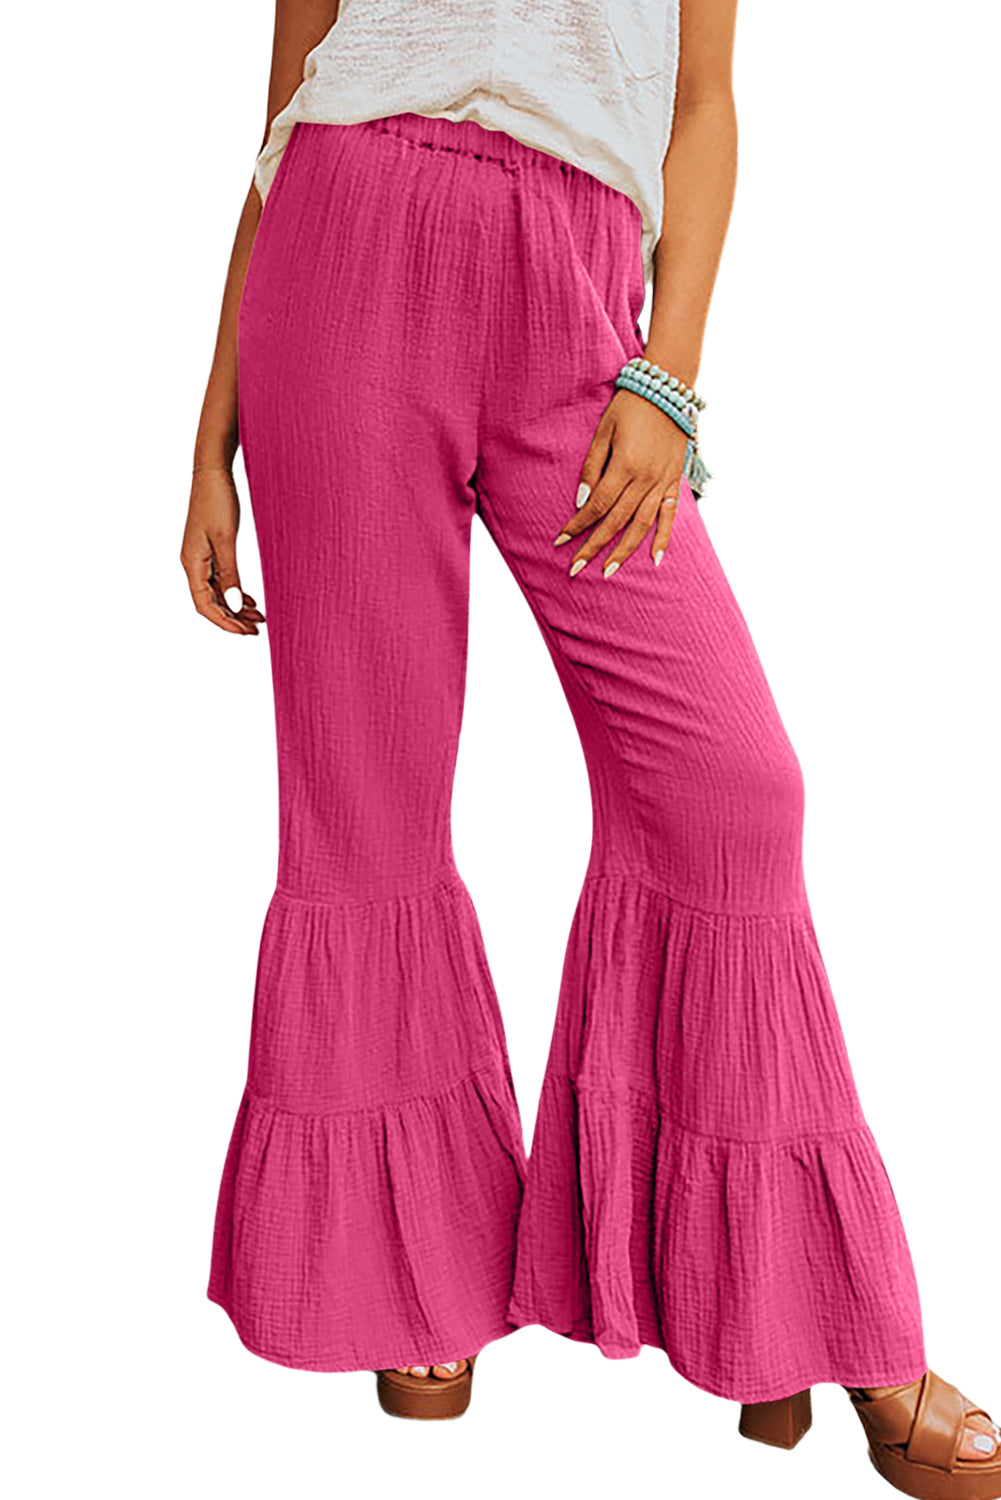 Pantalon taille haute texturé rose à volants et cloche